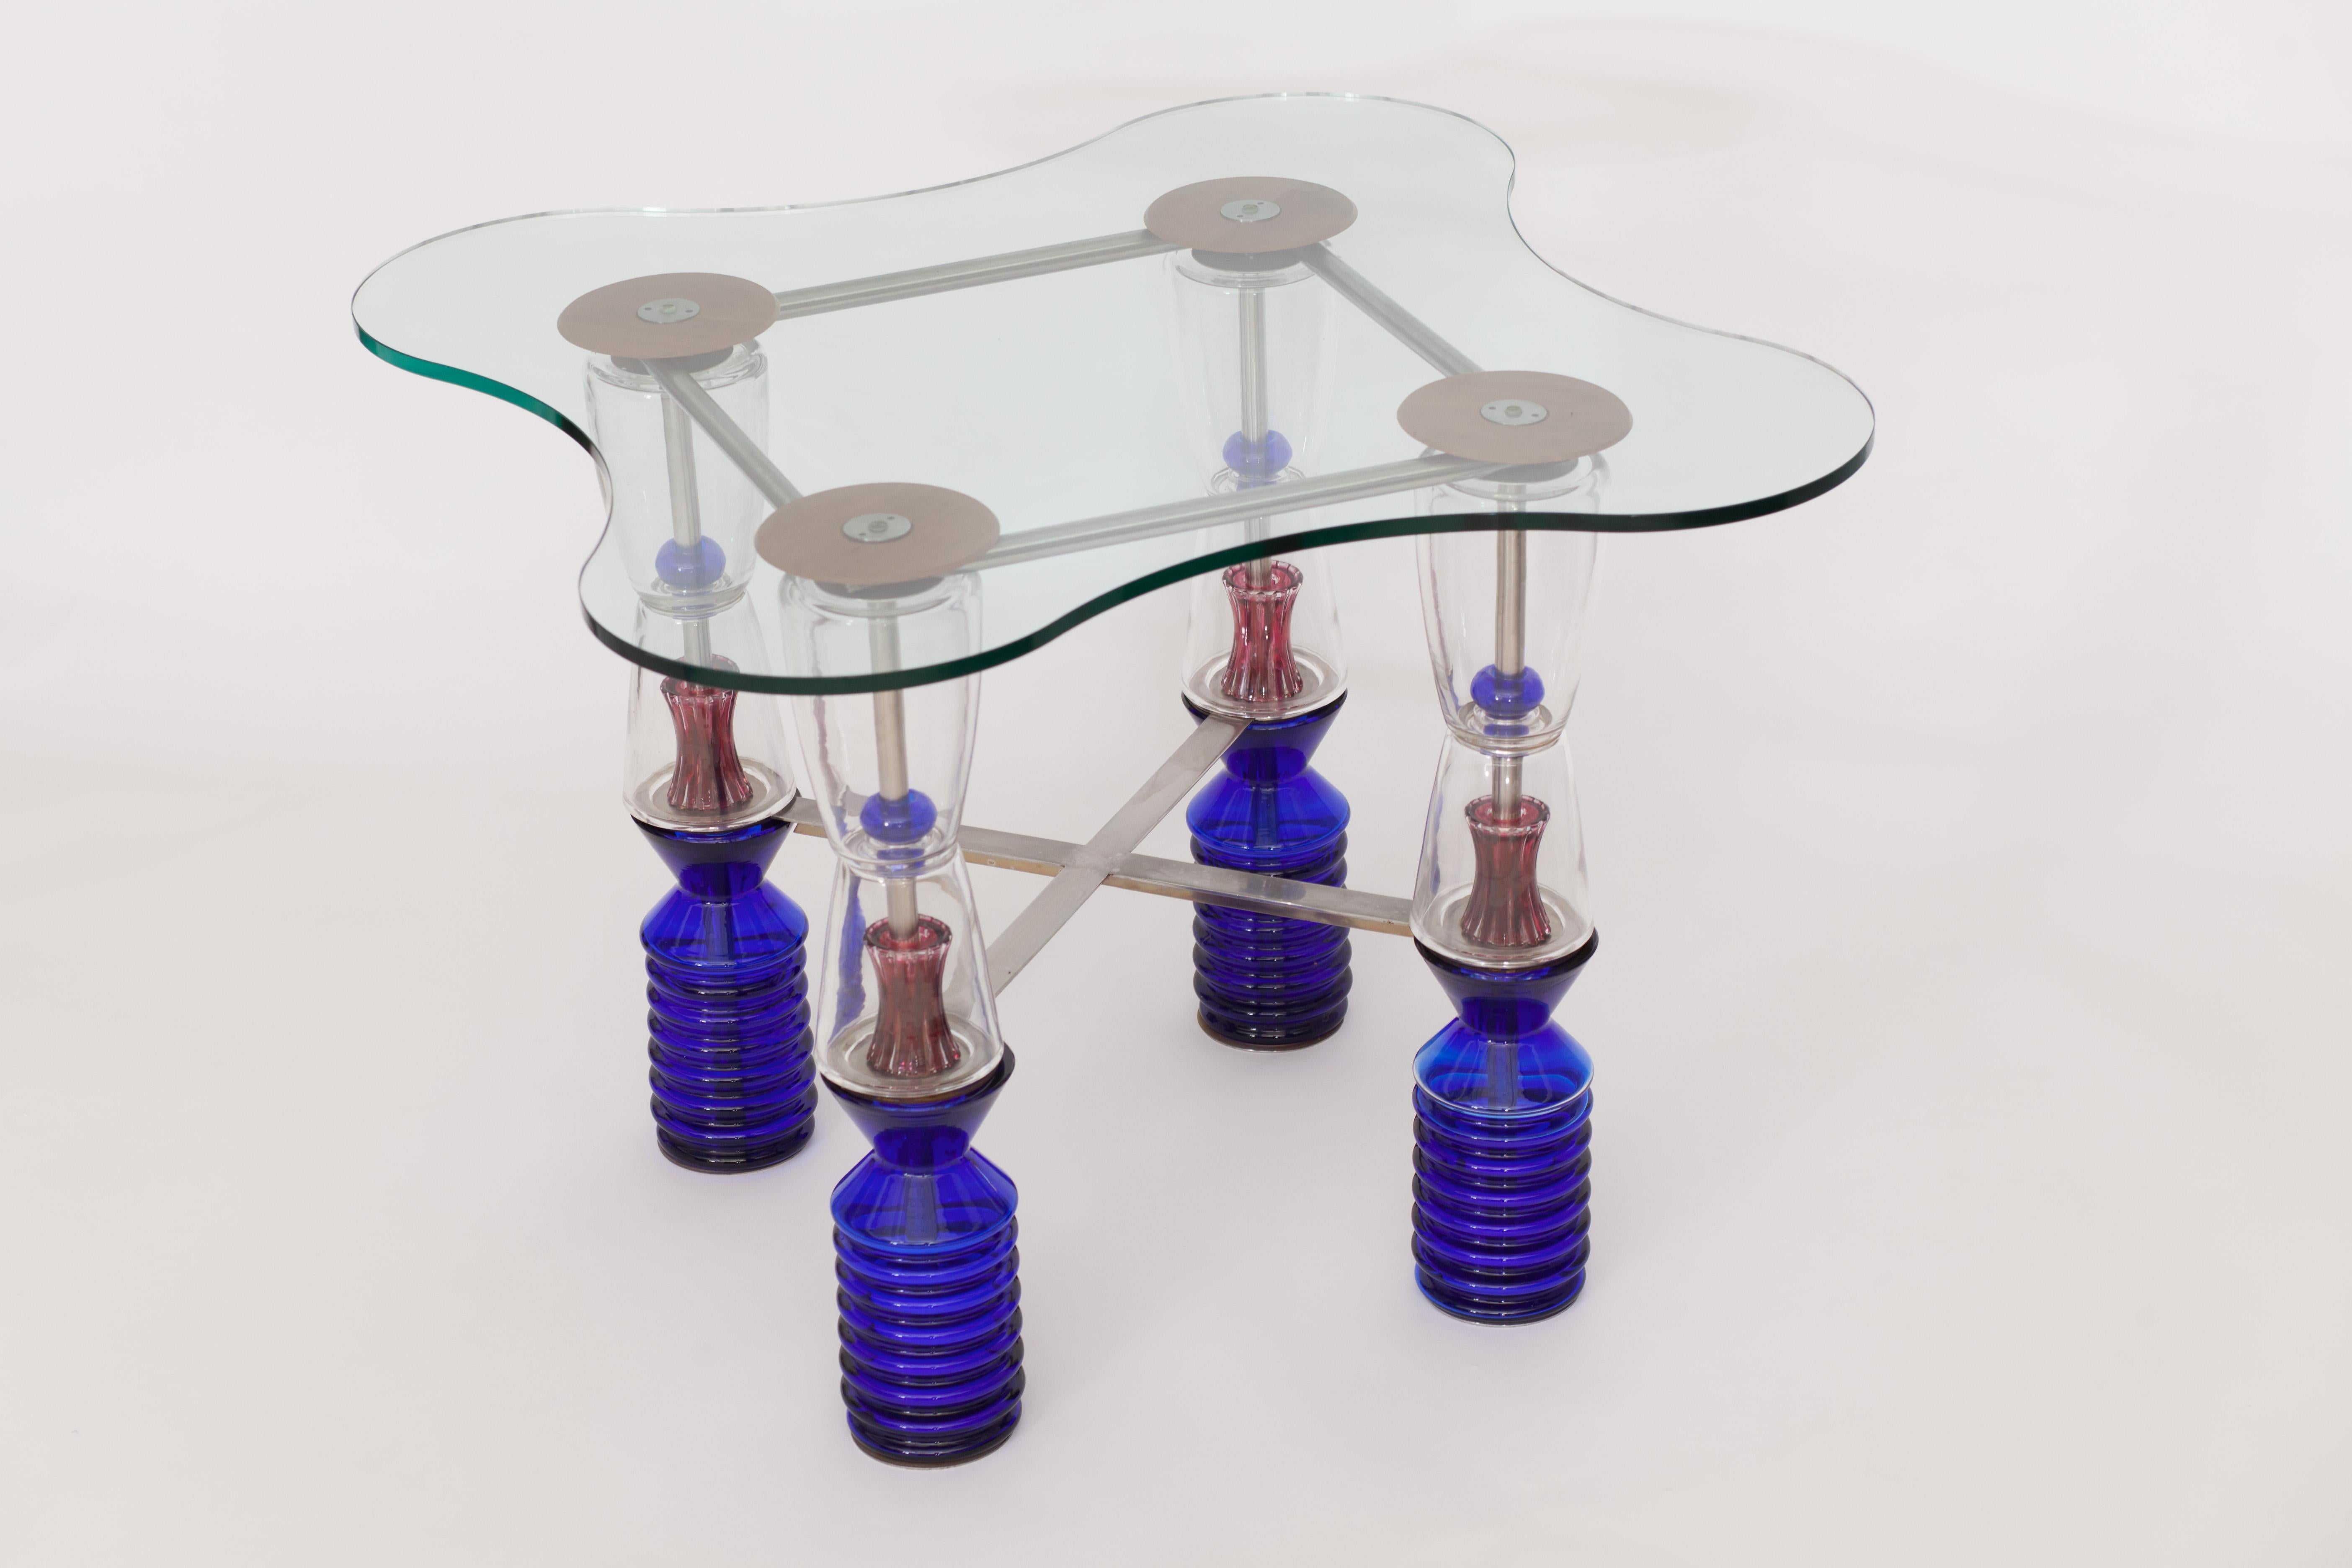 Van Praet & Val Saint lambert Table de jeu en cristal unique en son genre

Cette table d'appoint extraordinaire, caractérisée par ses formes géométriques et organiques et l'utilisation réfléchie des couleurs, a été créée par Frans Van Praet dans